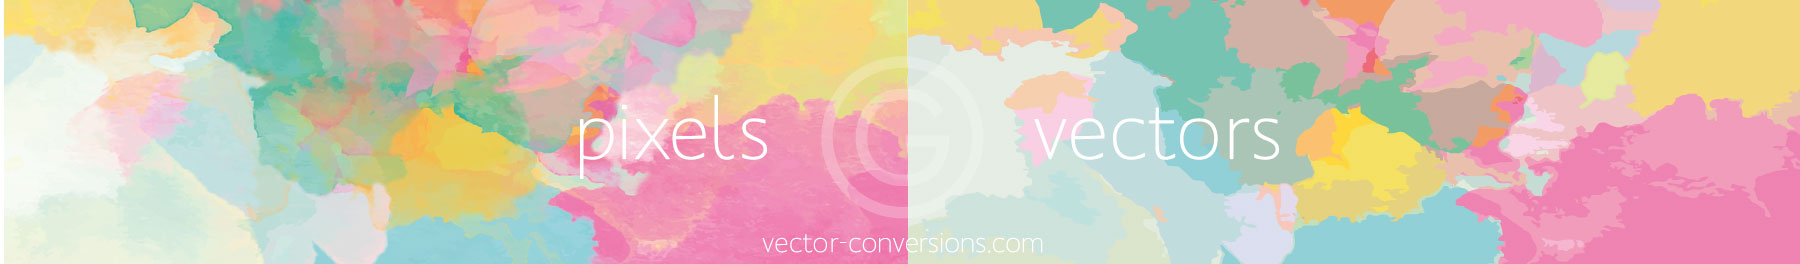 pixel color blends vs vectors